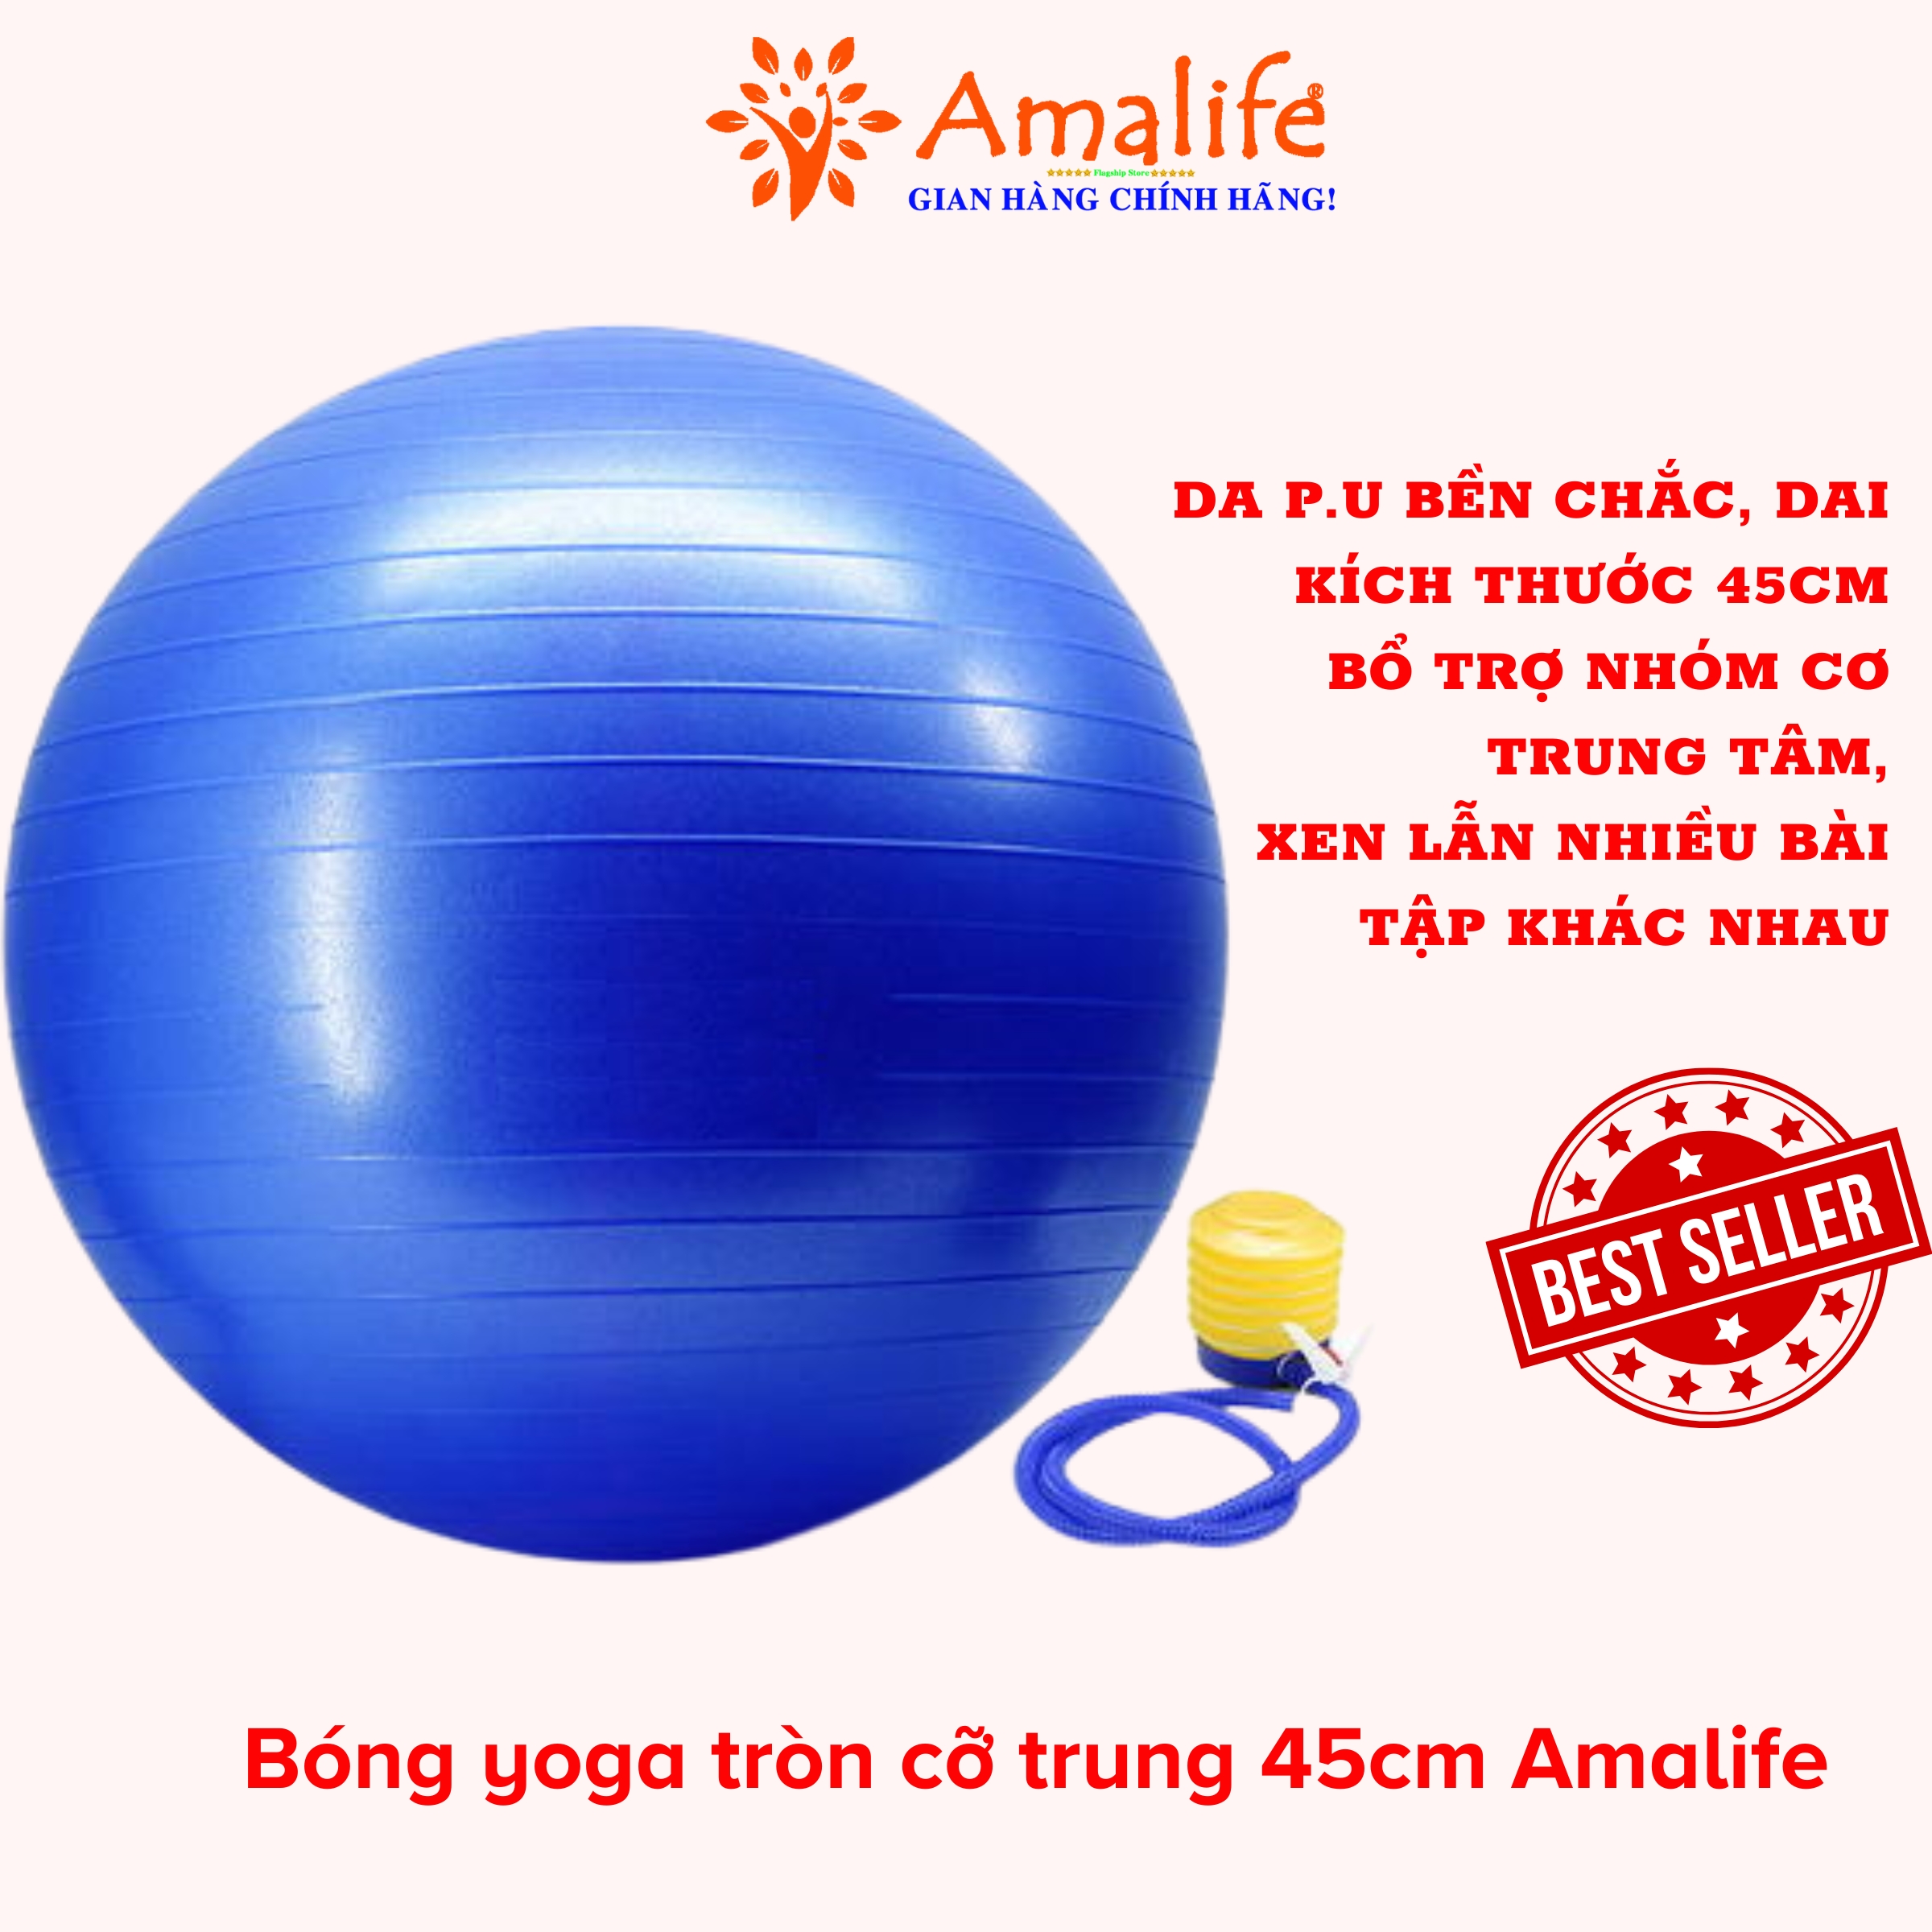 [HÀNG NHẬP KHẨU] Bóng tập Yoga, Bóng Yoga tròn cỡ đại chọn cỡ 45cm, 65cm cao cấp - Hàng chính hãng Amalife